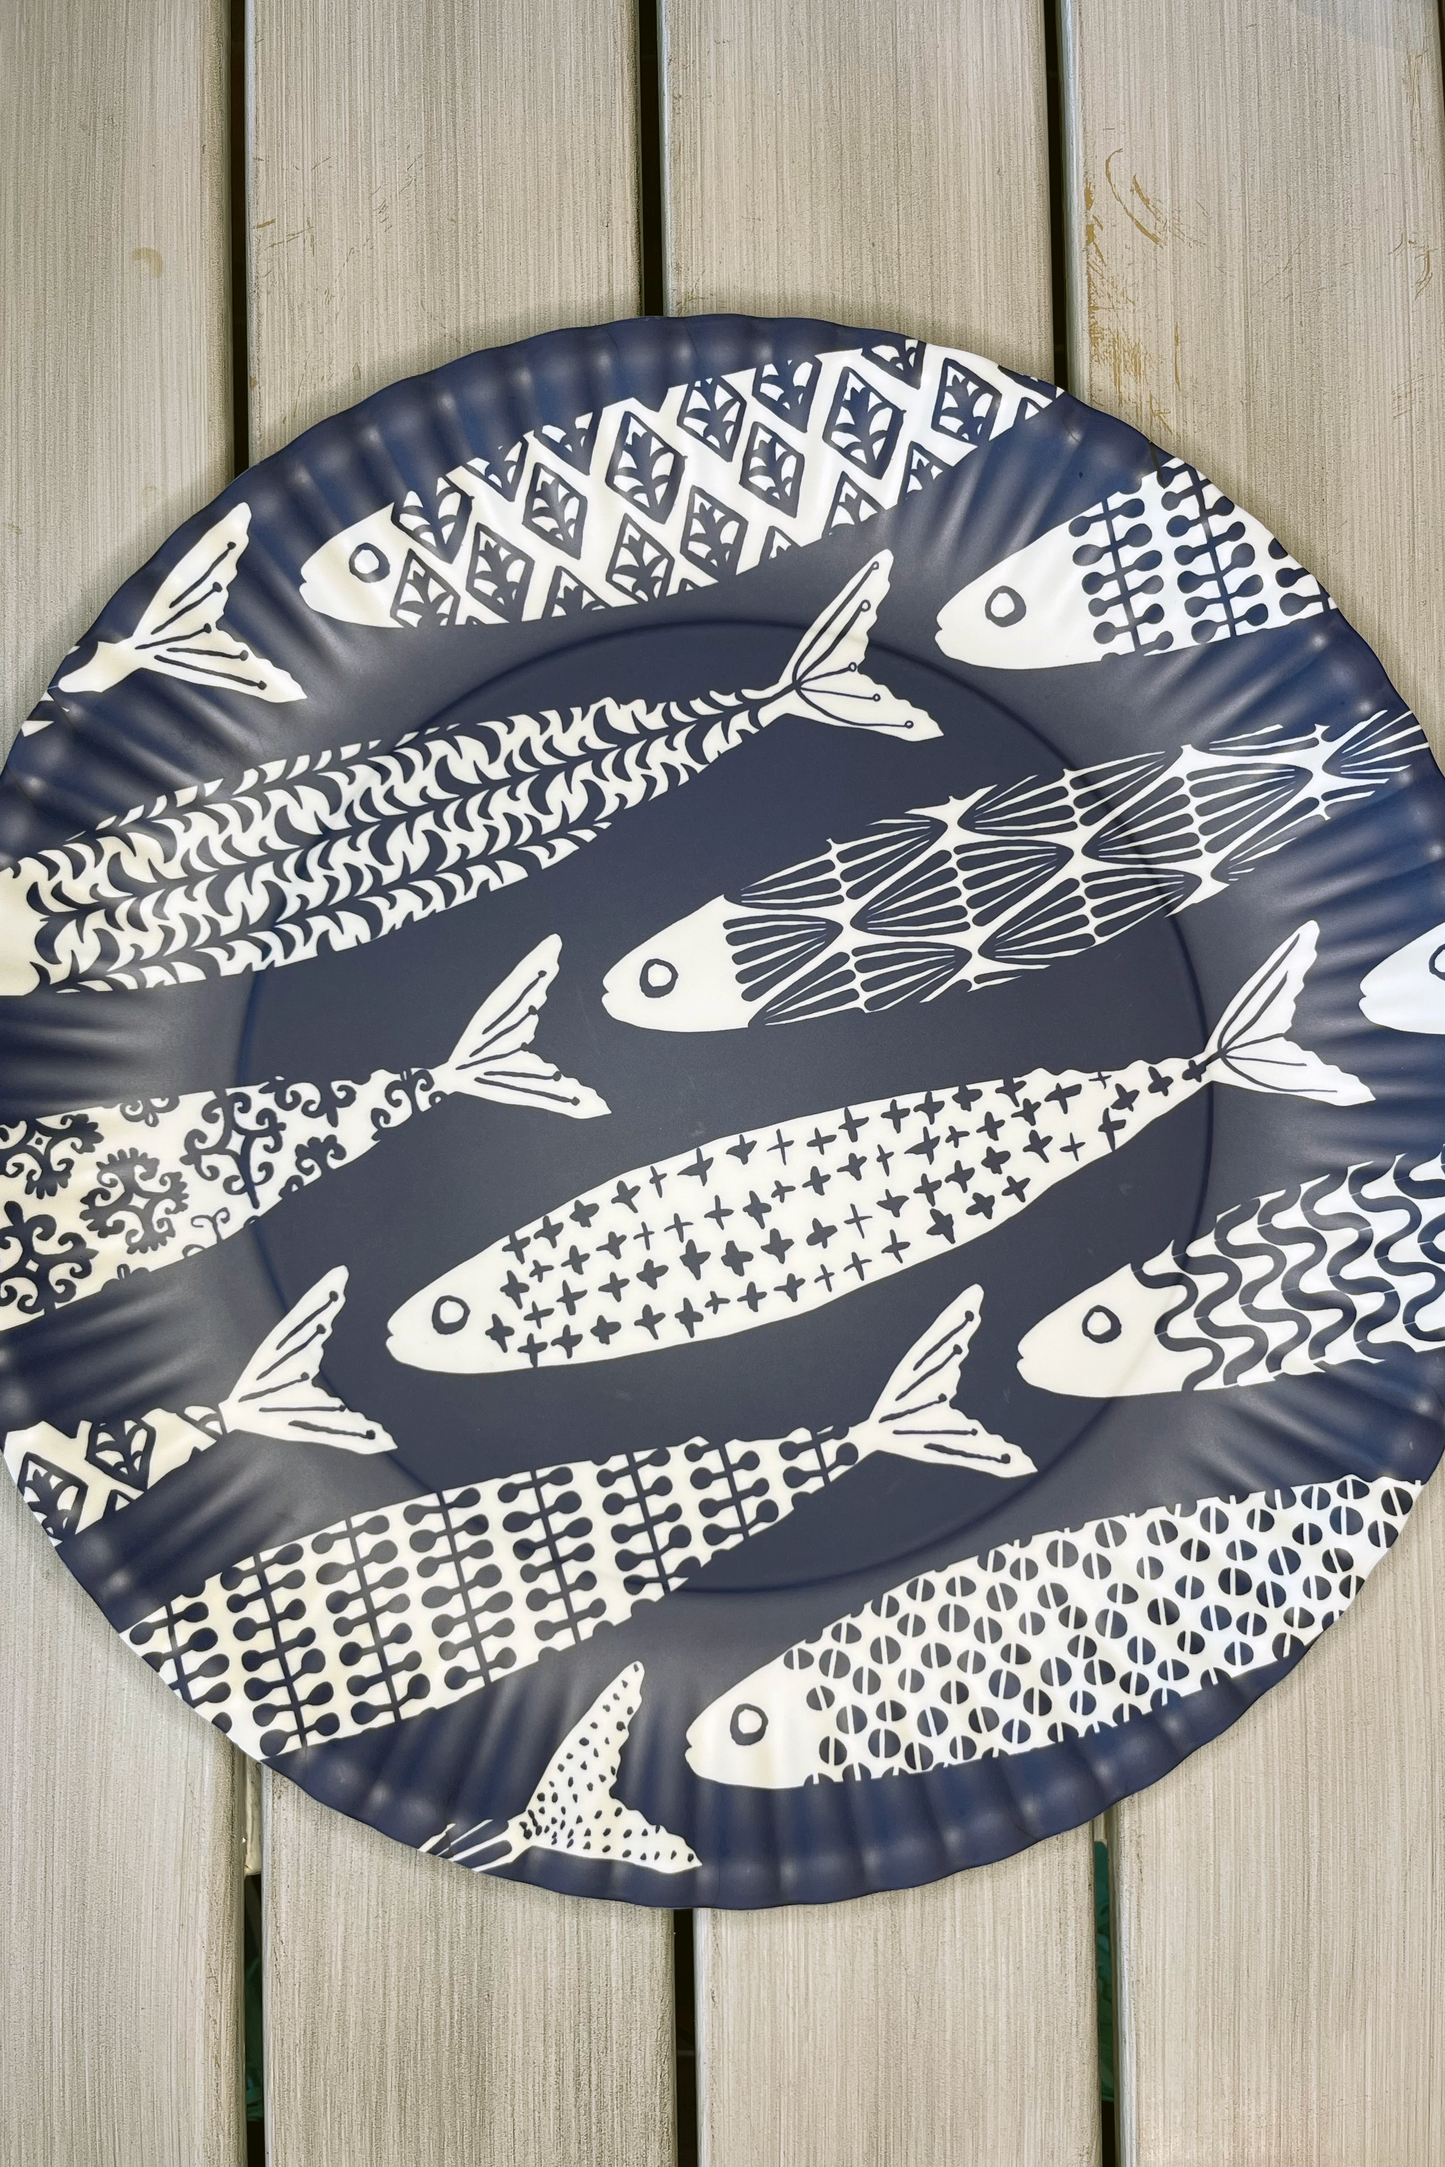 School of Fish Melamine Serving Platter